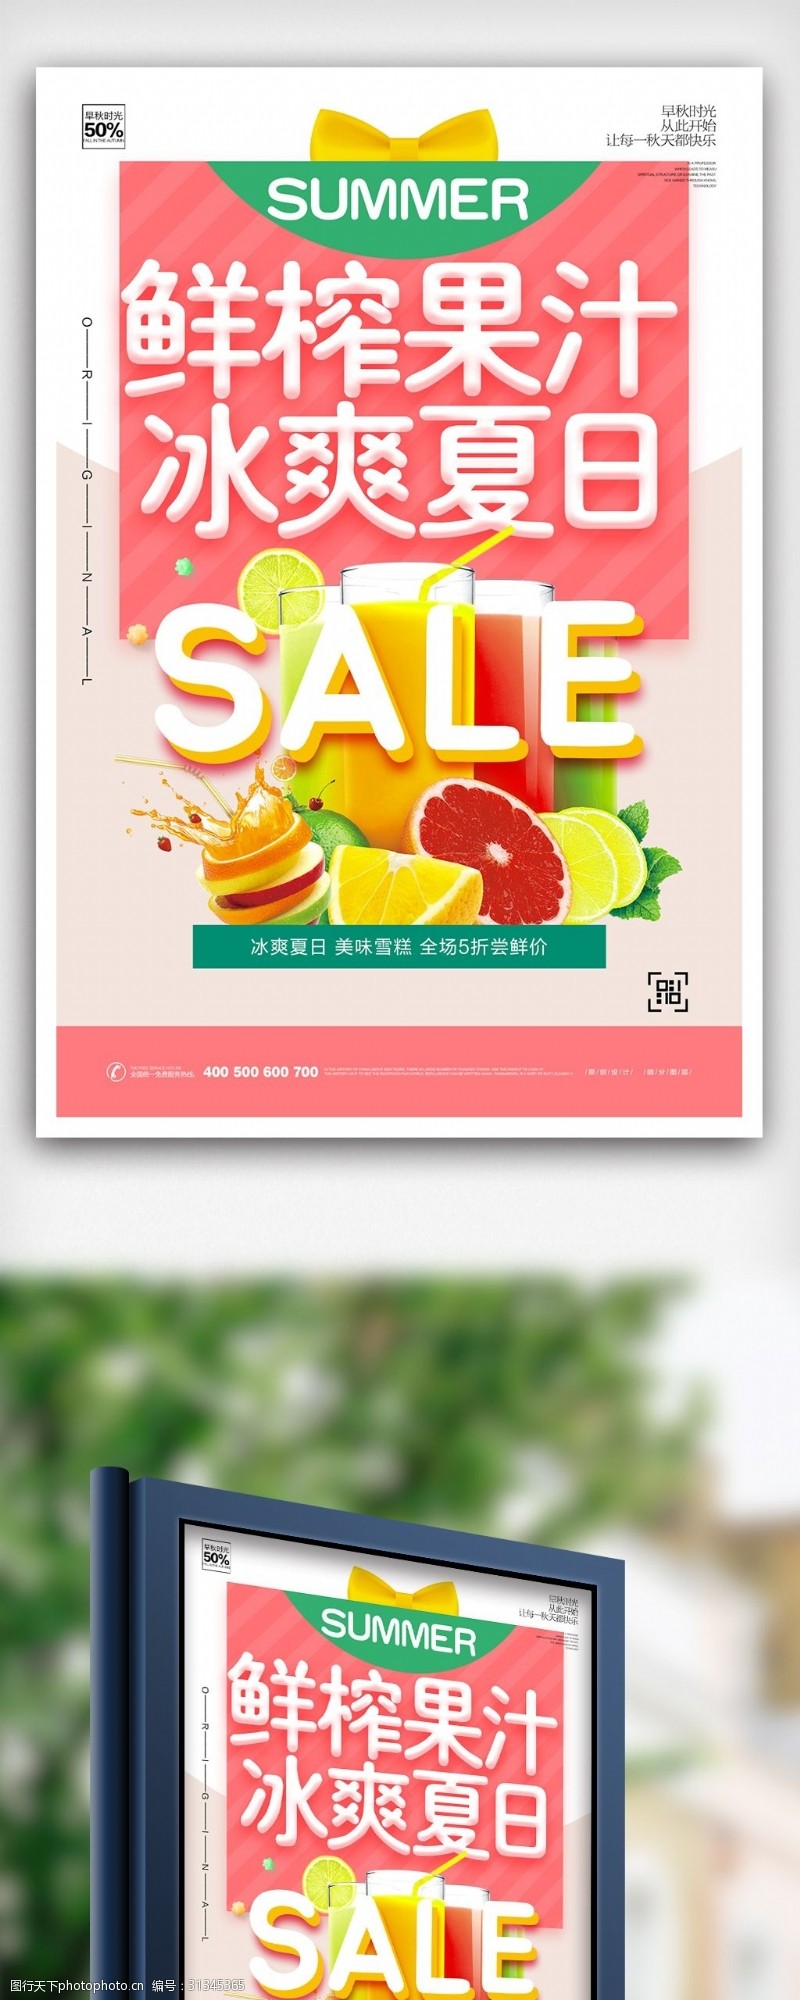 果汁店炫彩卡通鲜榨果汁宣传海报设计